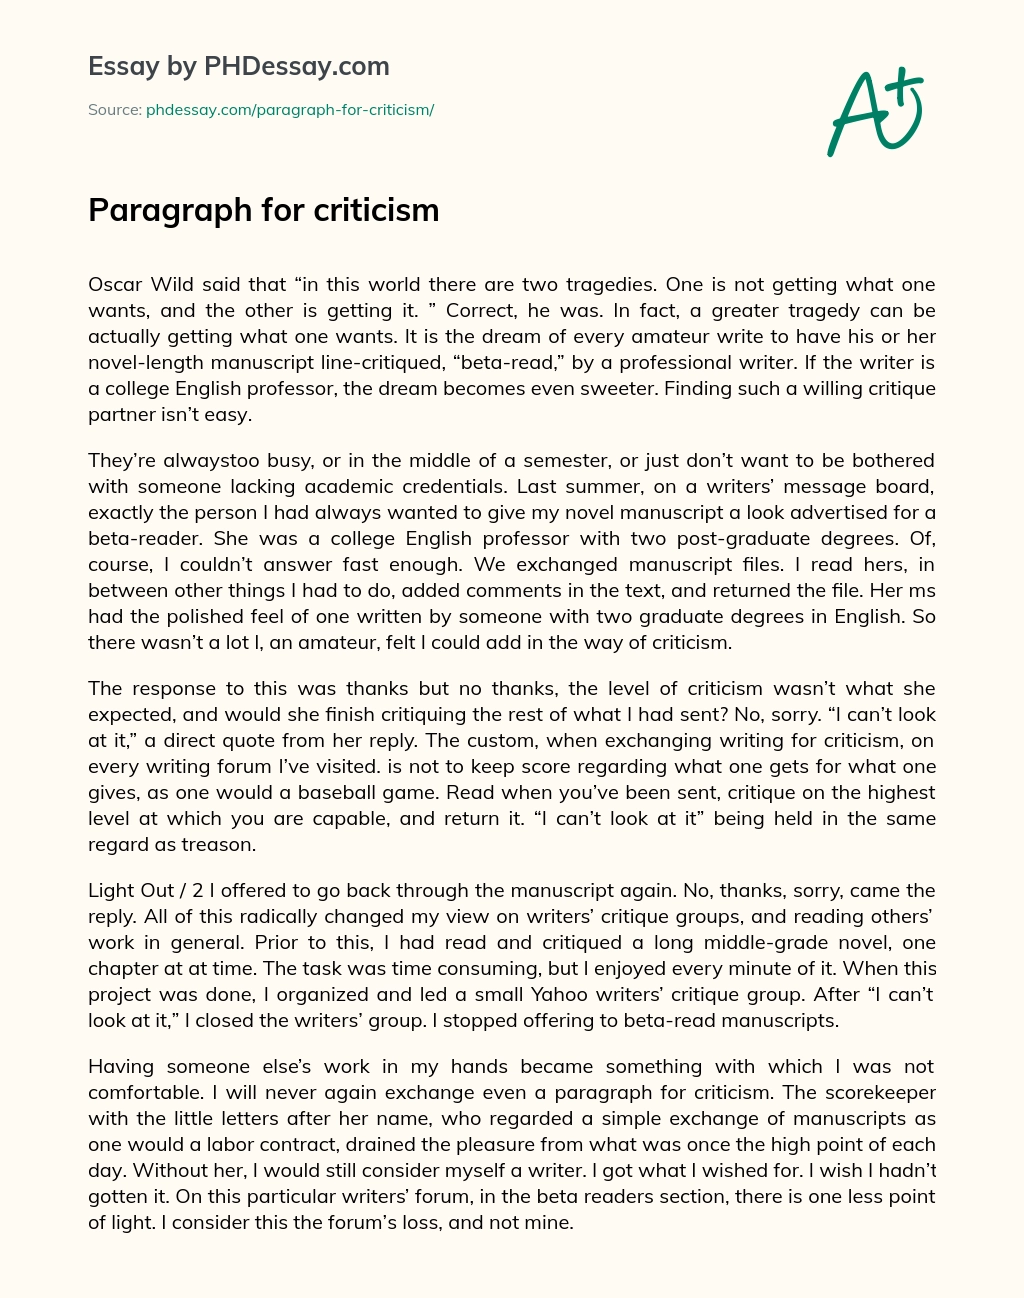 Paragraph for criticism essay